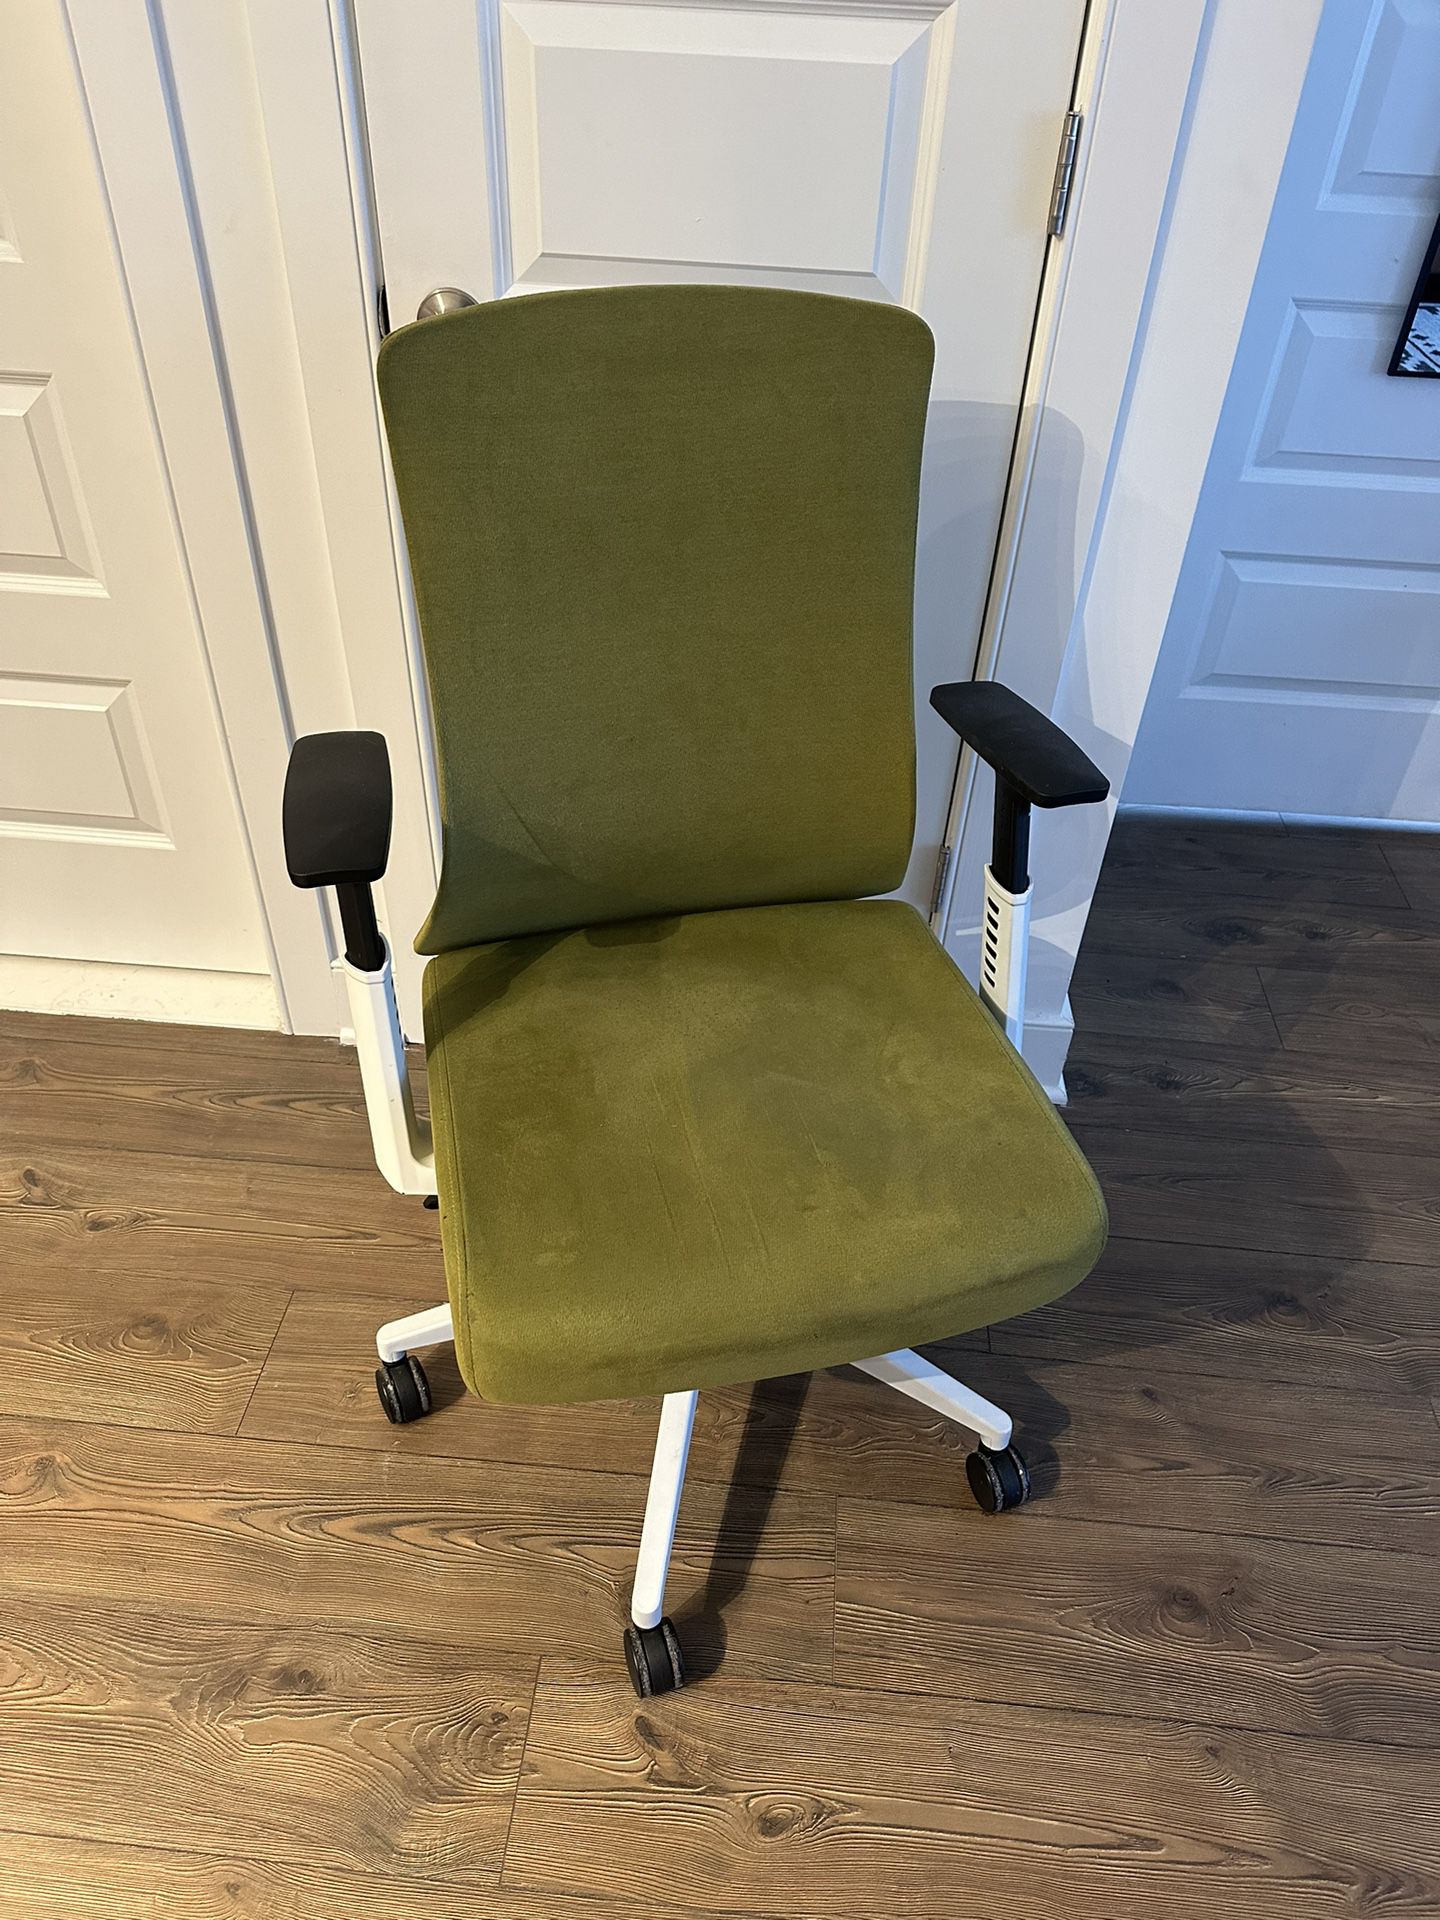 Green Ergonomic Computer Office Desk Chair